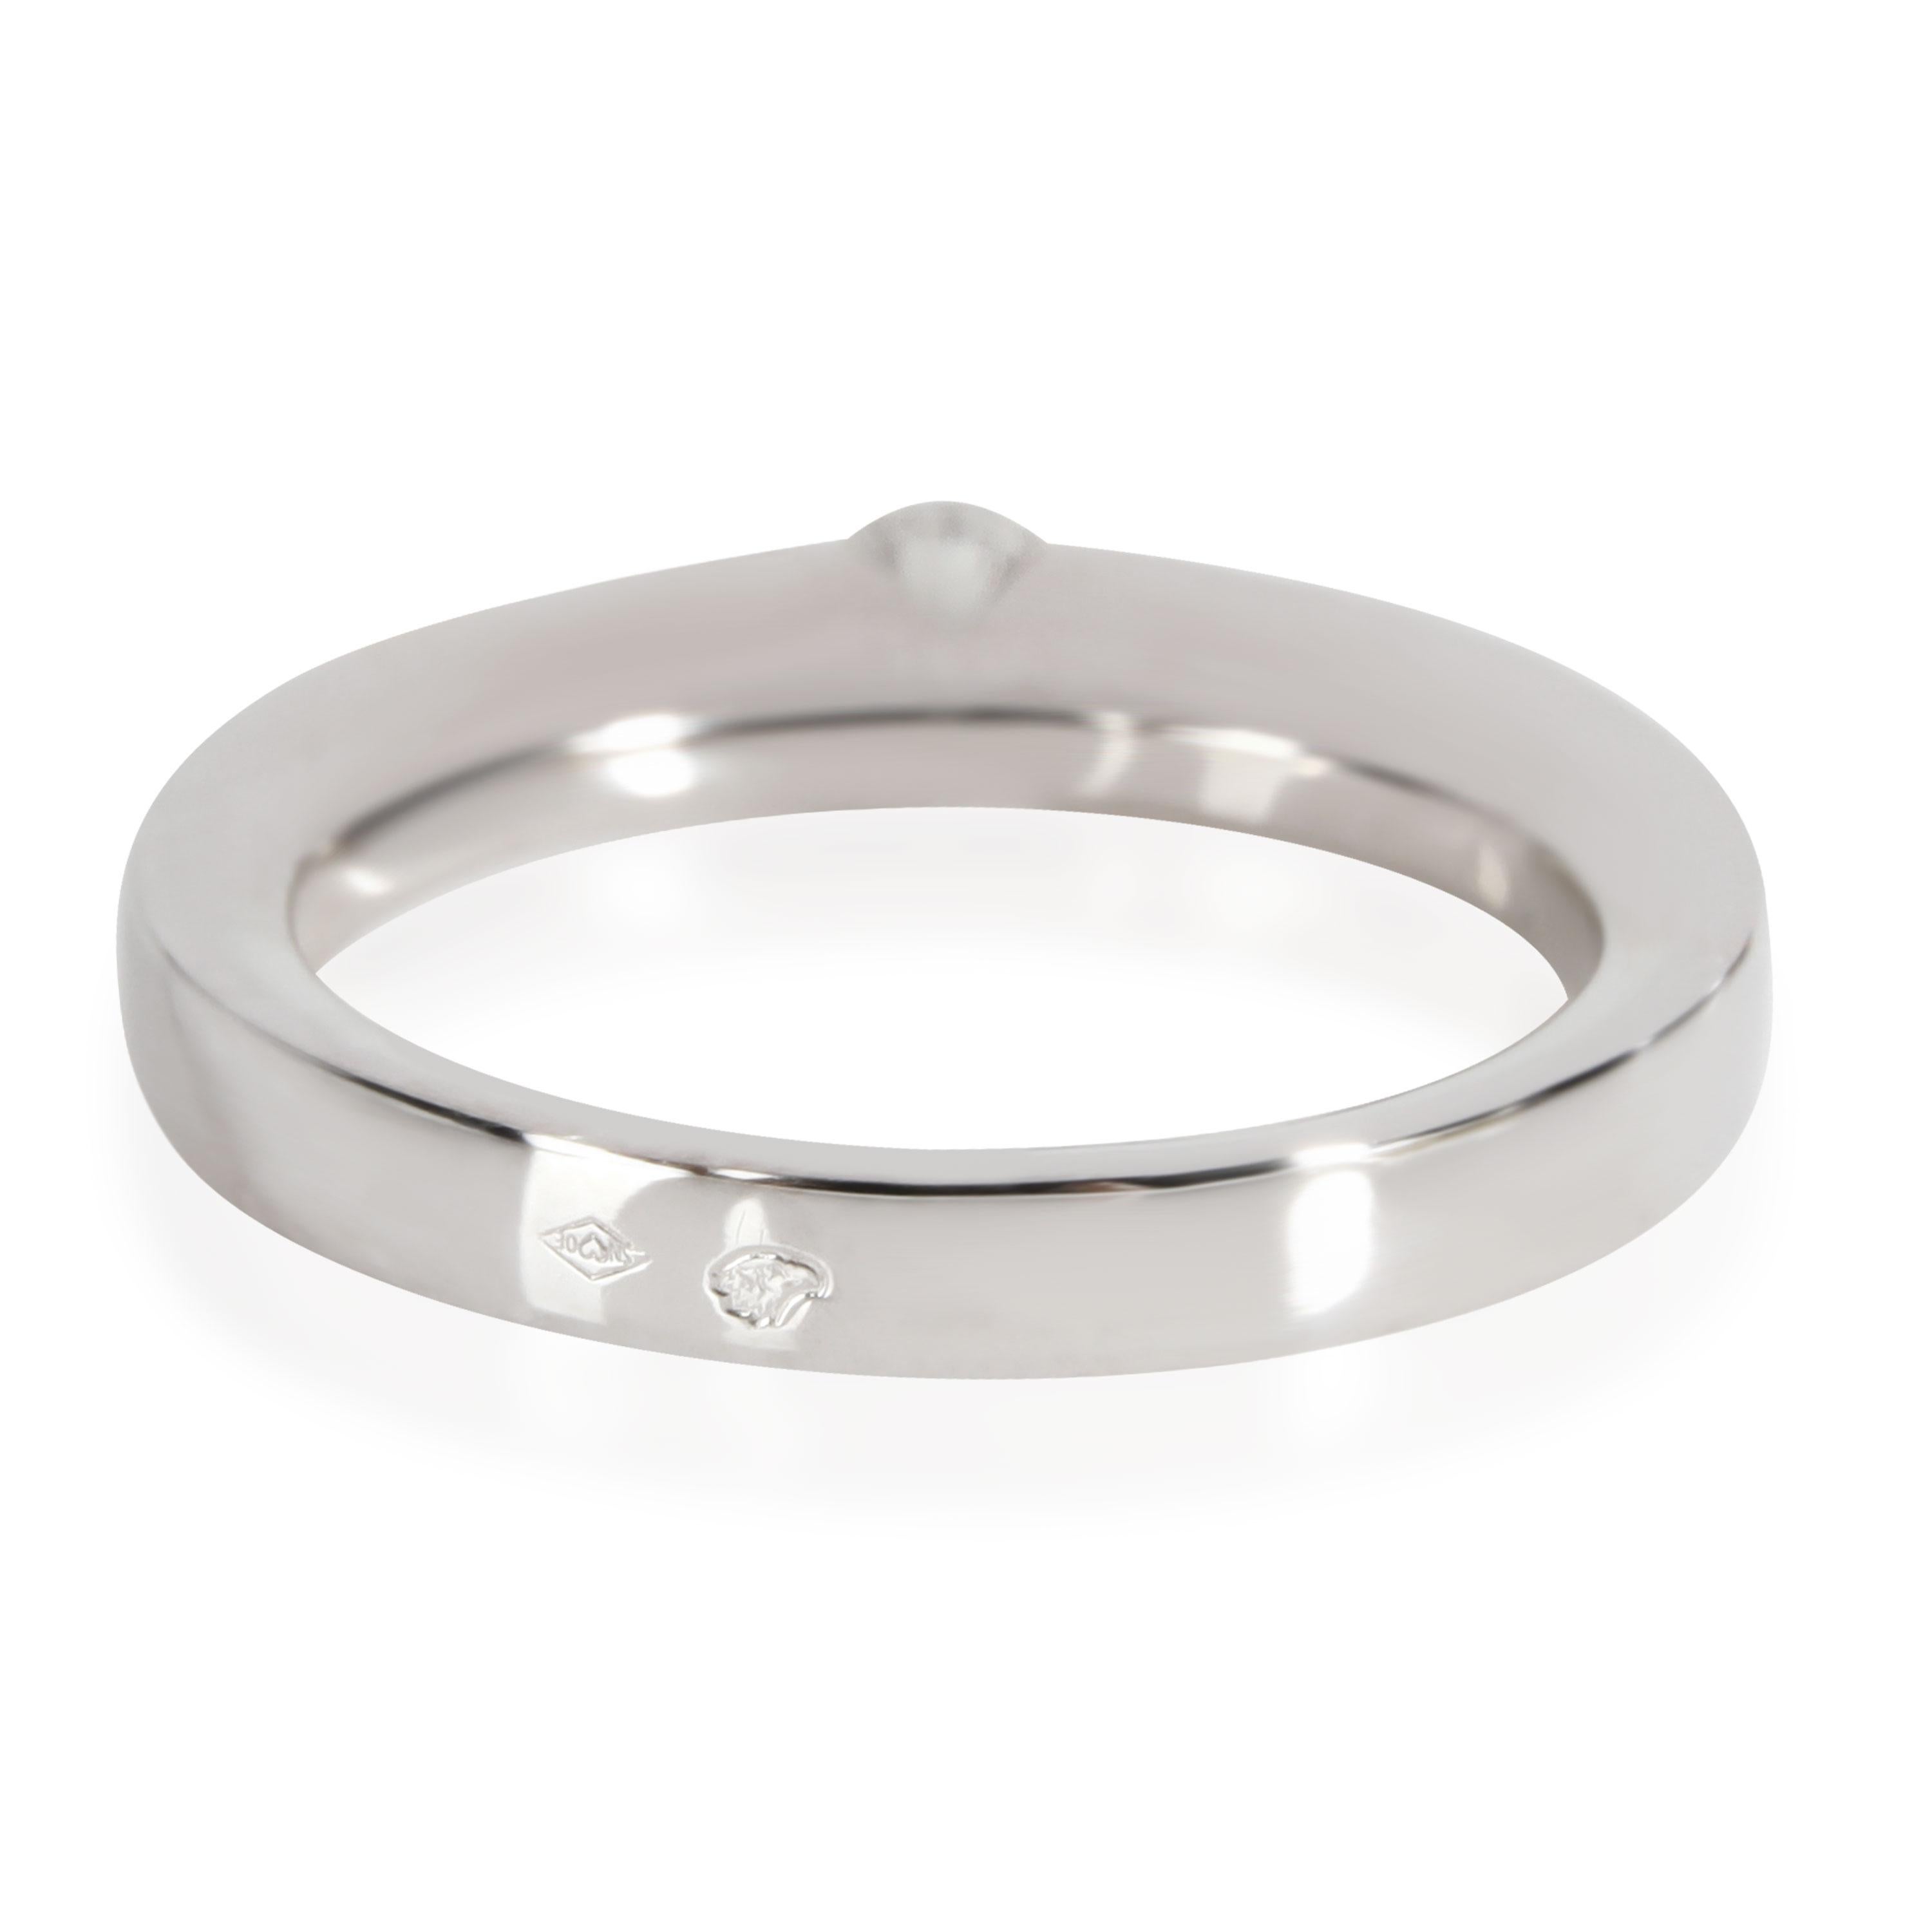 Cartier Datum Diamant Solitär Ring in 18K Weißgold H-I VVS 0,21 CTW

In ausgezeichnetem Zustand und kürzlich poliert. Die Ringgröße von Cartier ist 50.